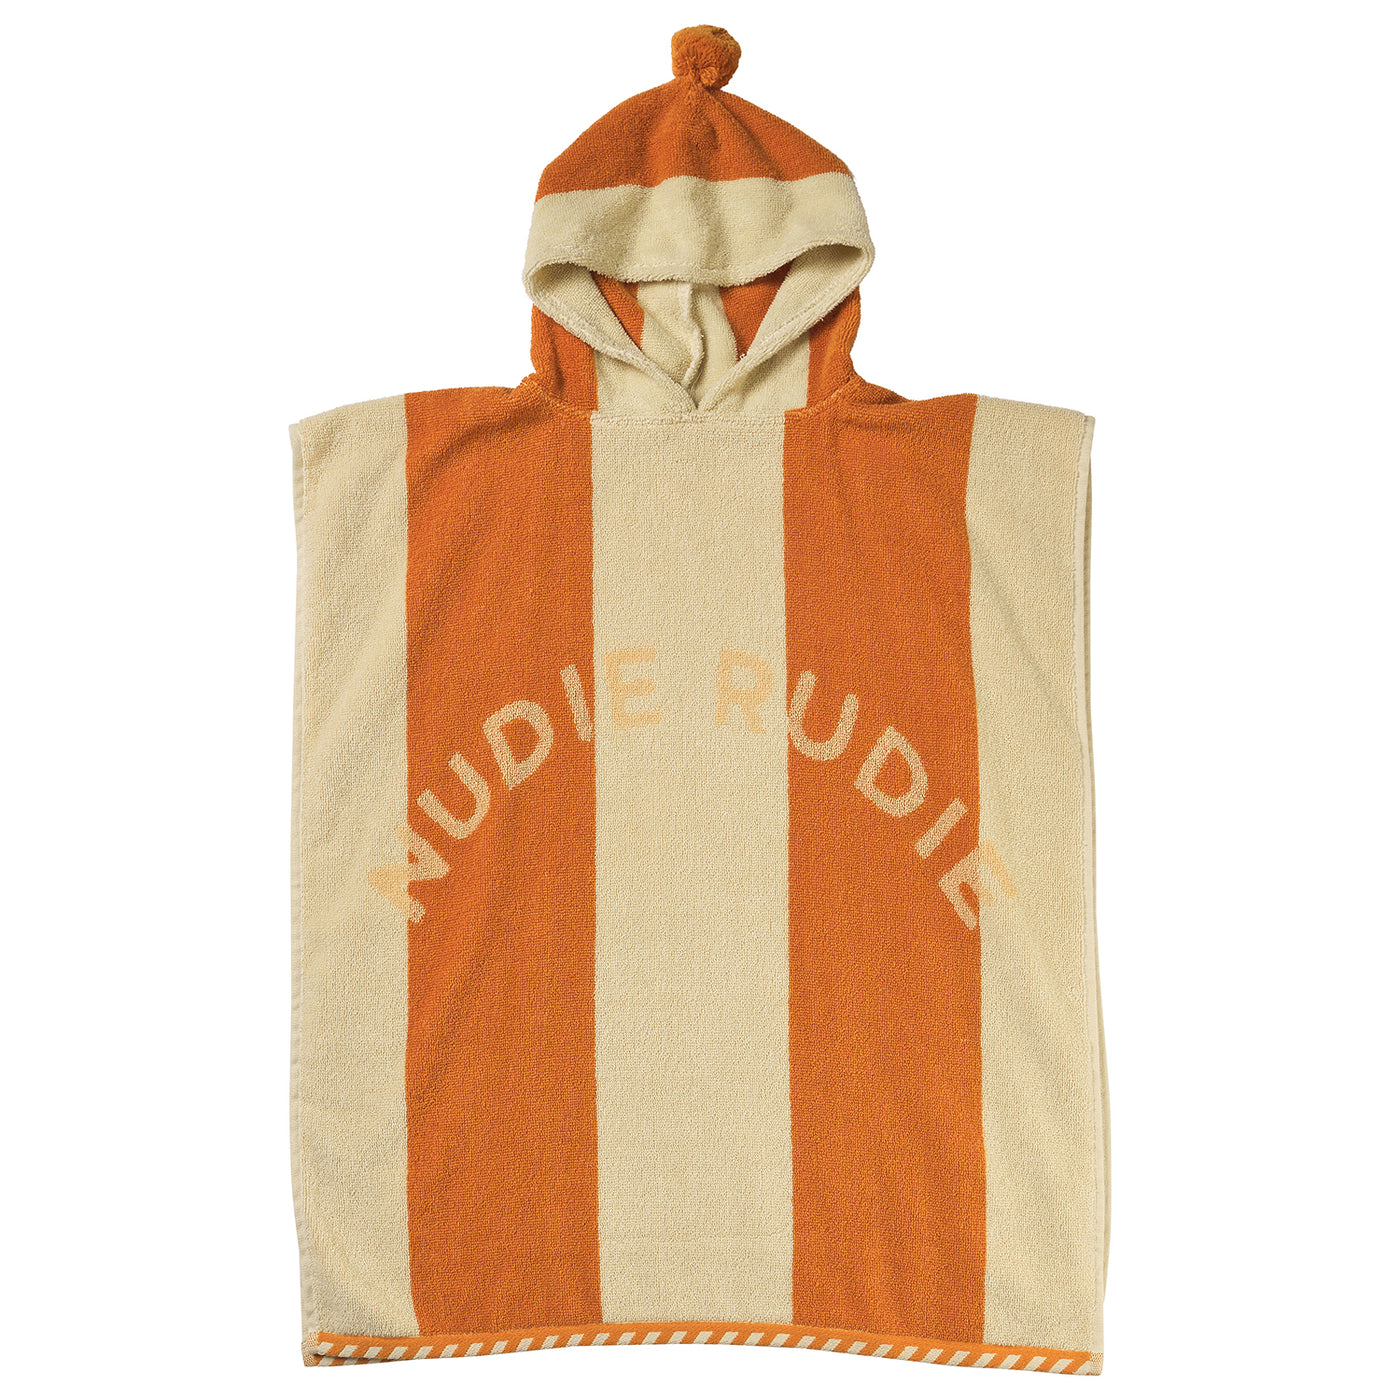 Didcot Hooded Nudie Towel - Persimmon Default Title